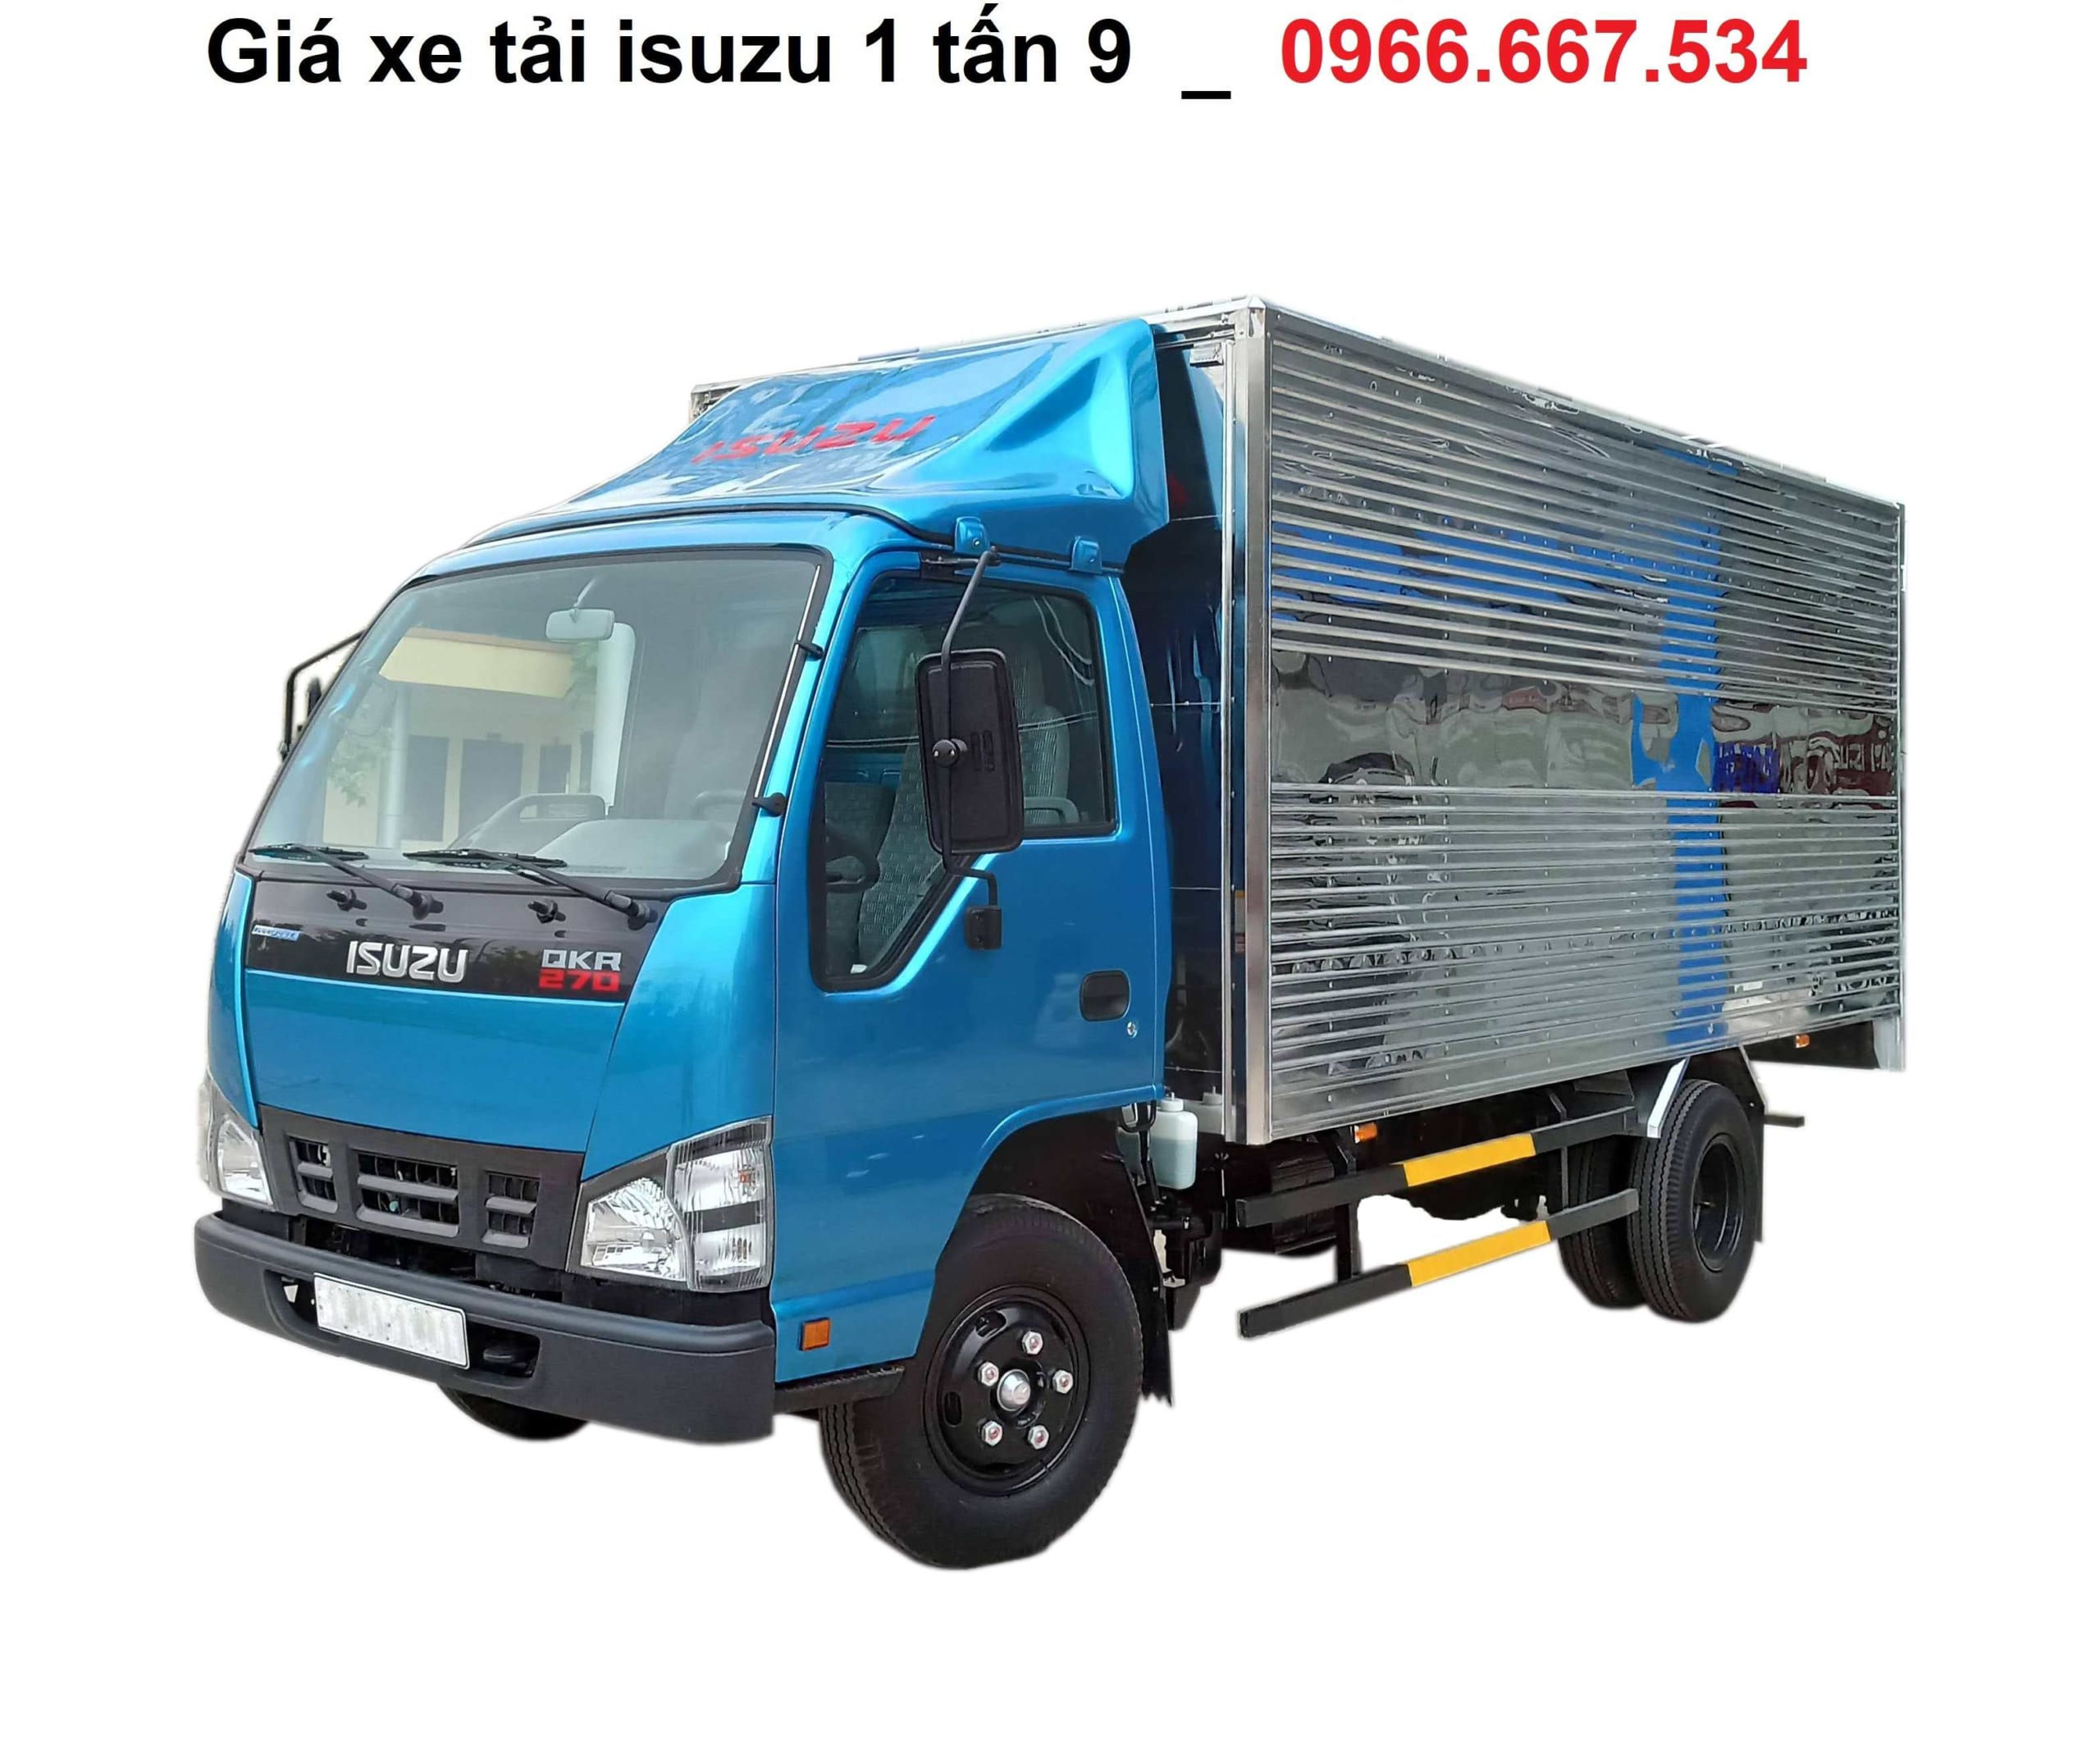 Báo giá xe tải Isuzu 1.9 tấn ưu đãi nhất _ 0966.667.534